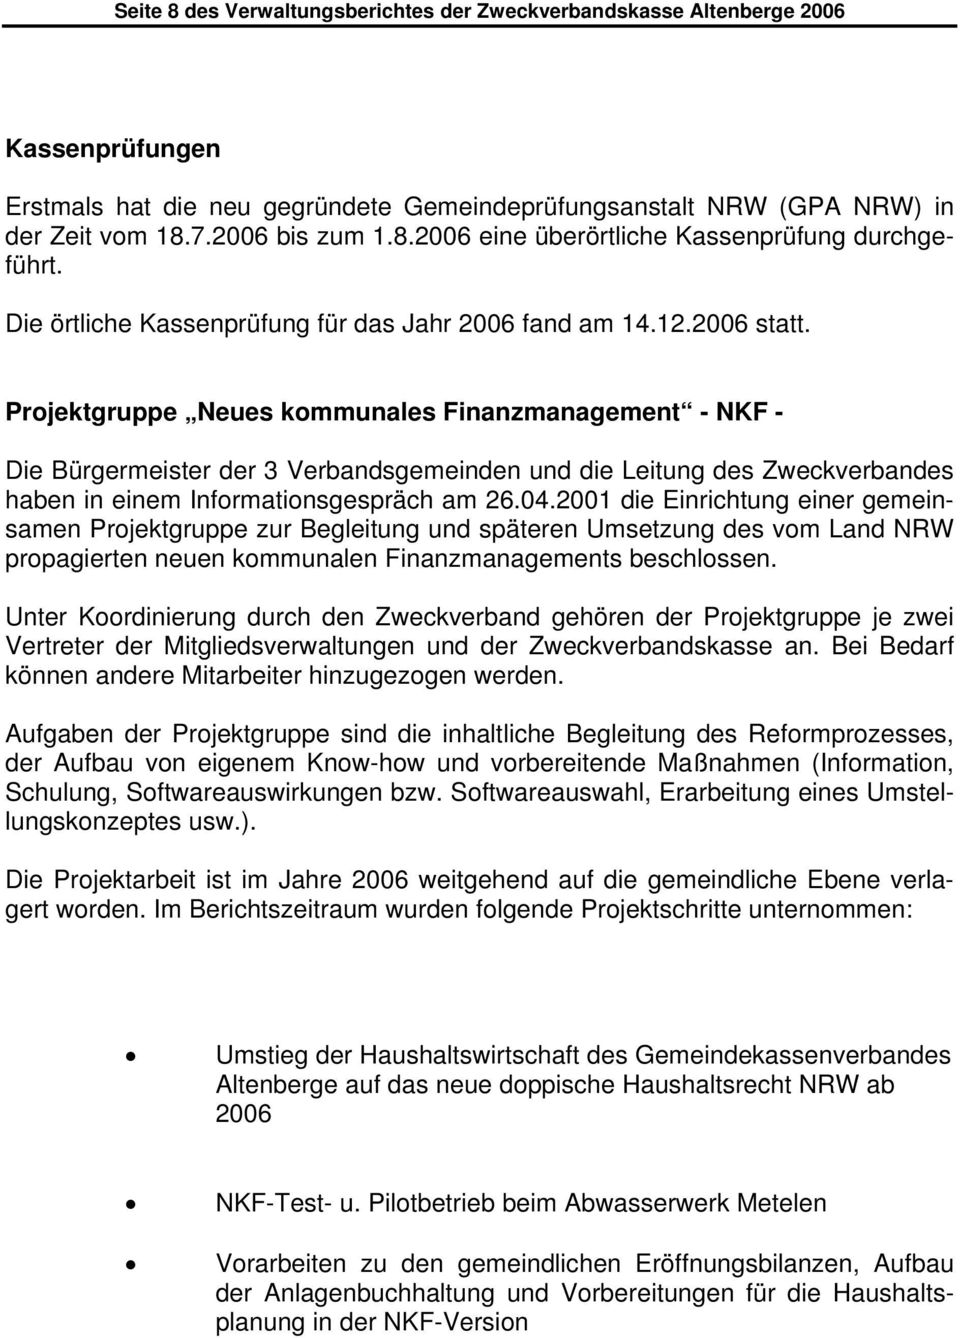 Projektgruppe Neues kommunales Finanzmanagement - NKF - Die Bürgermeister der 3 Verbandsgemeinden und die Leitung des Zweckverbandes haben in einem Informationsgespräch am 26.04.